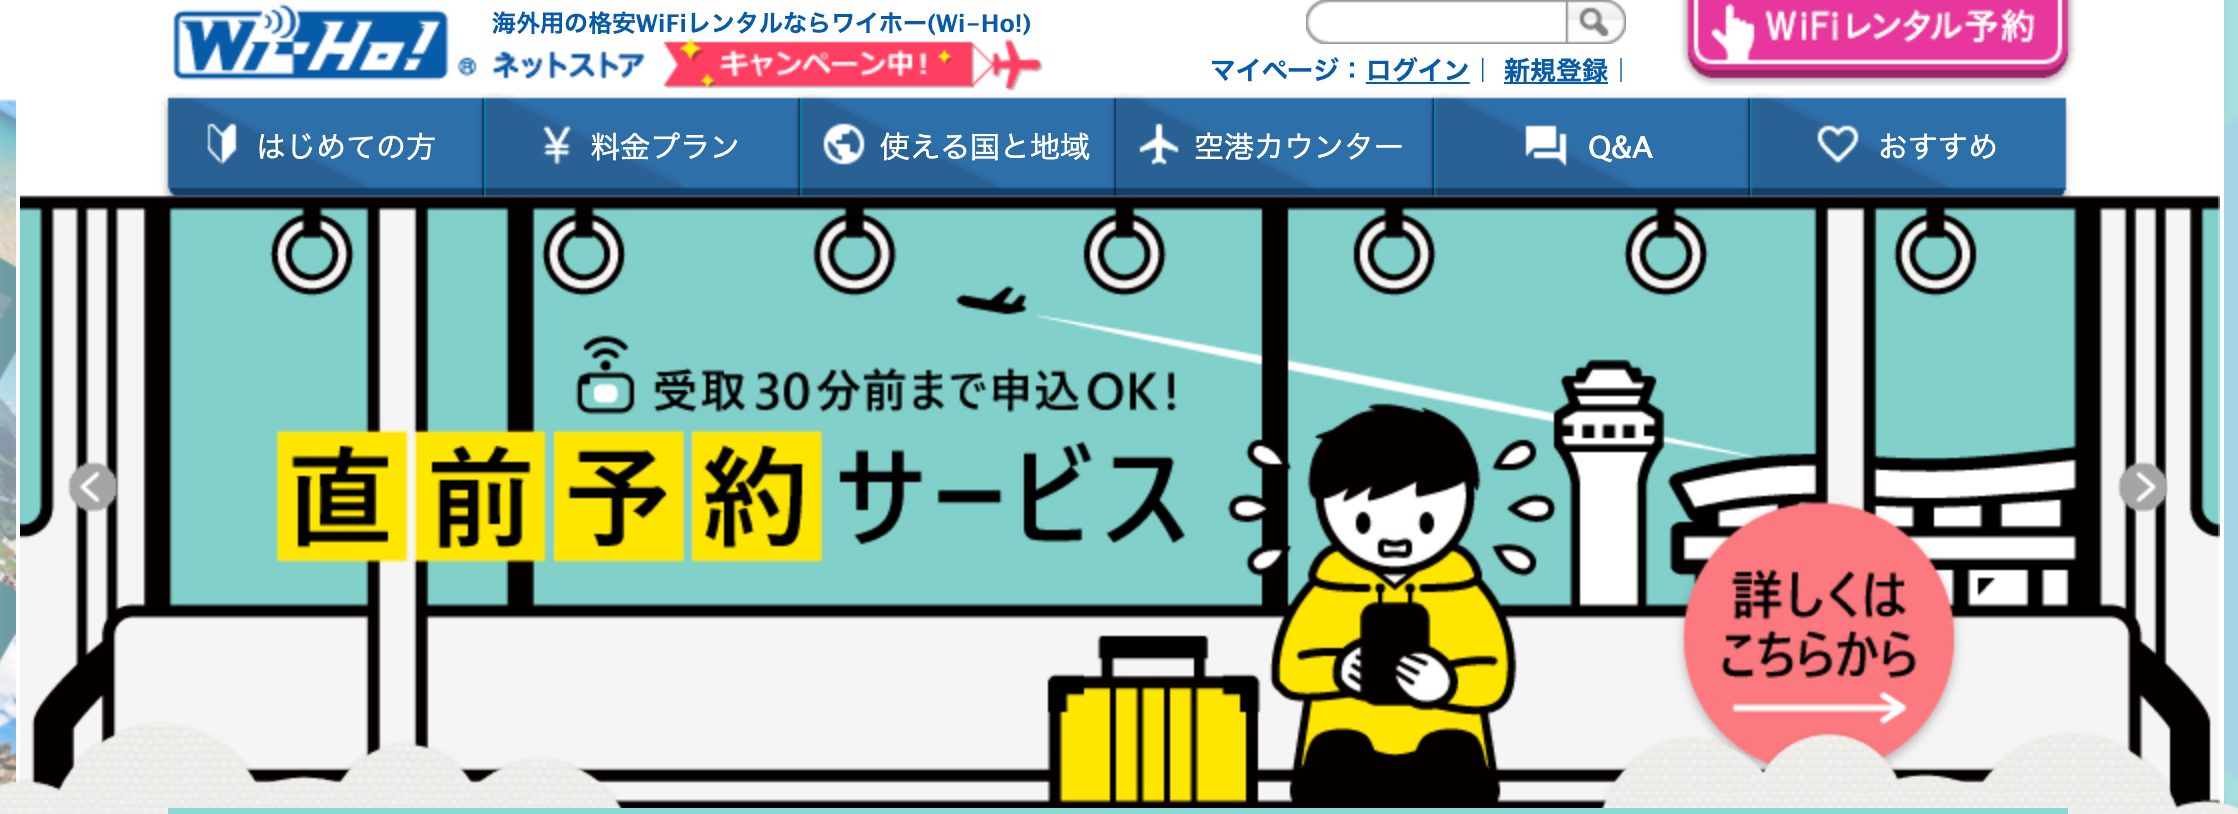 √70以上 関西 空港 wifi レンタル 当日 274528